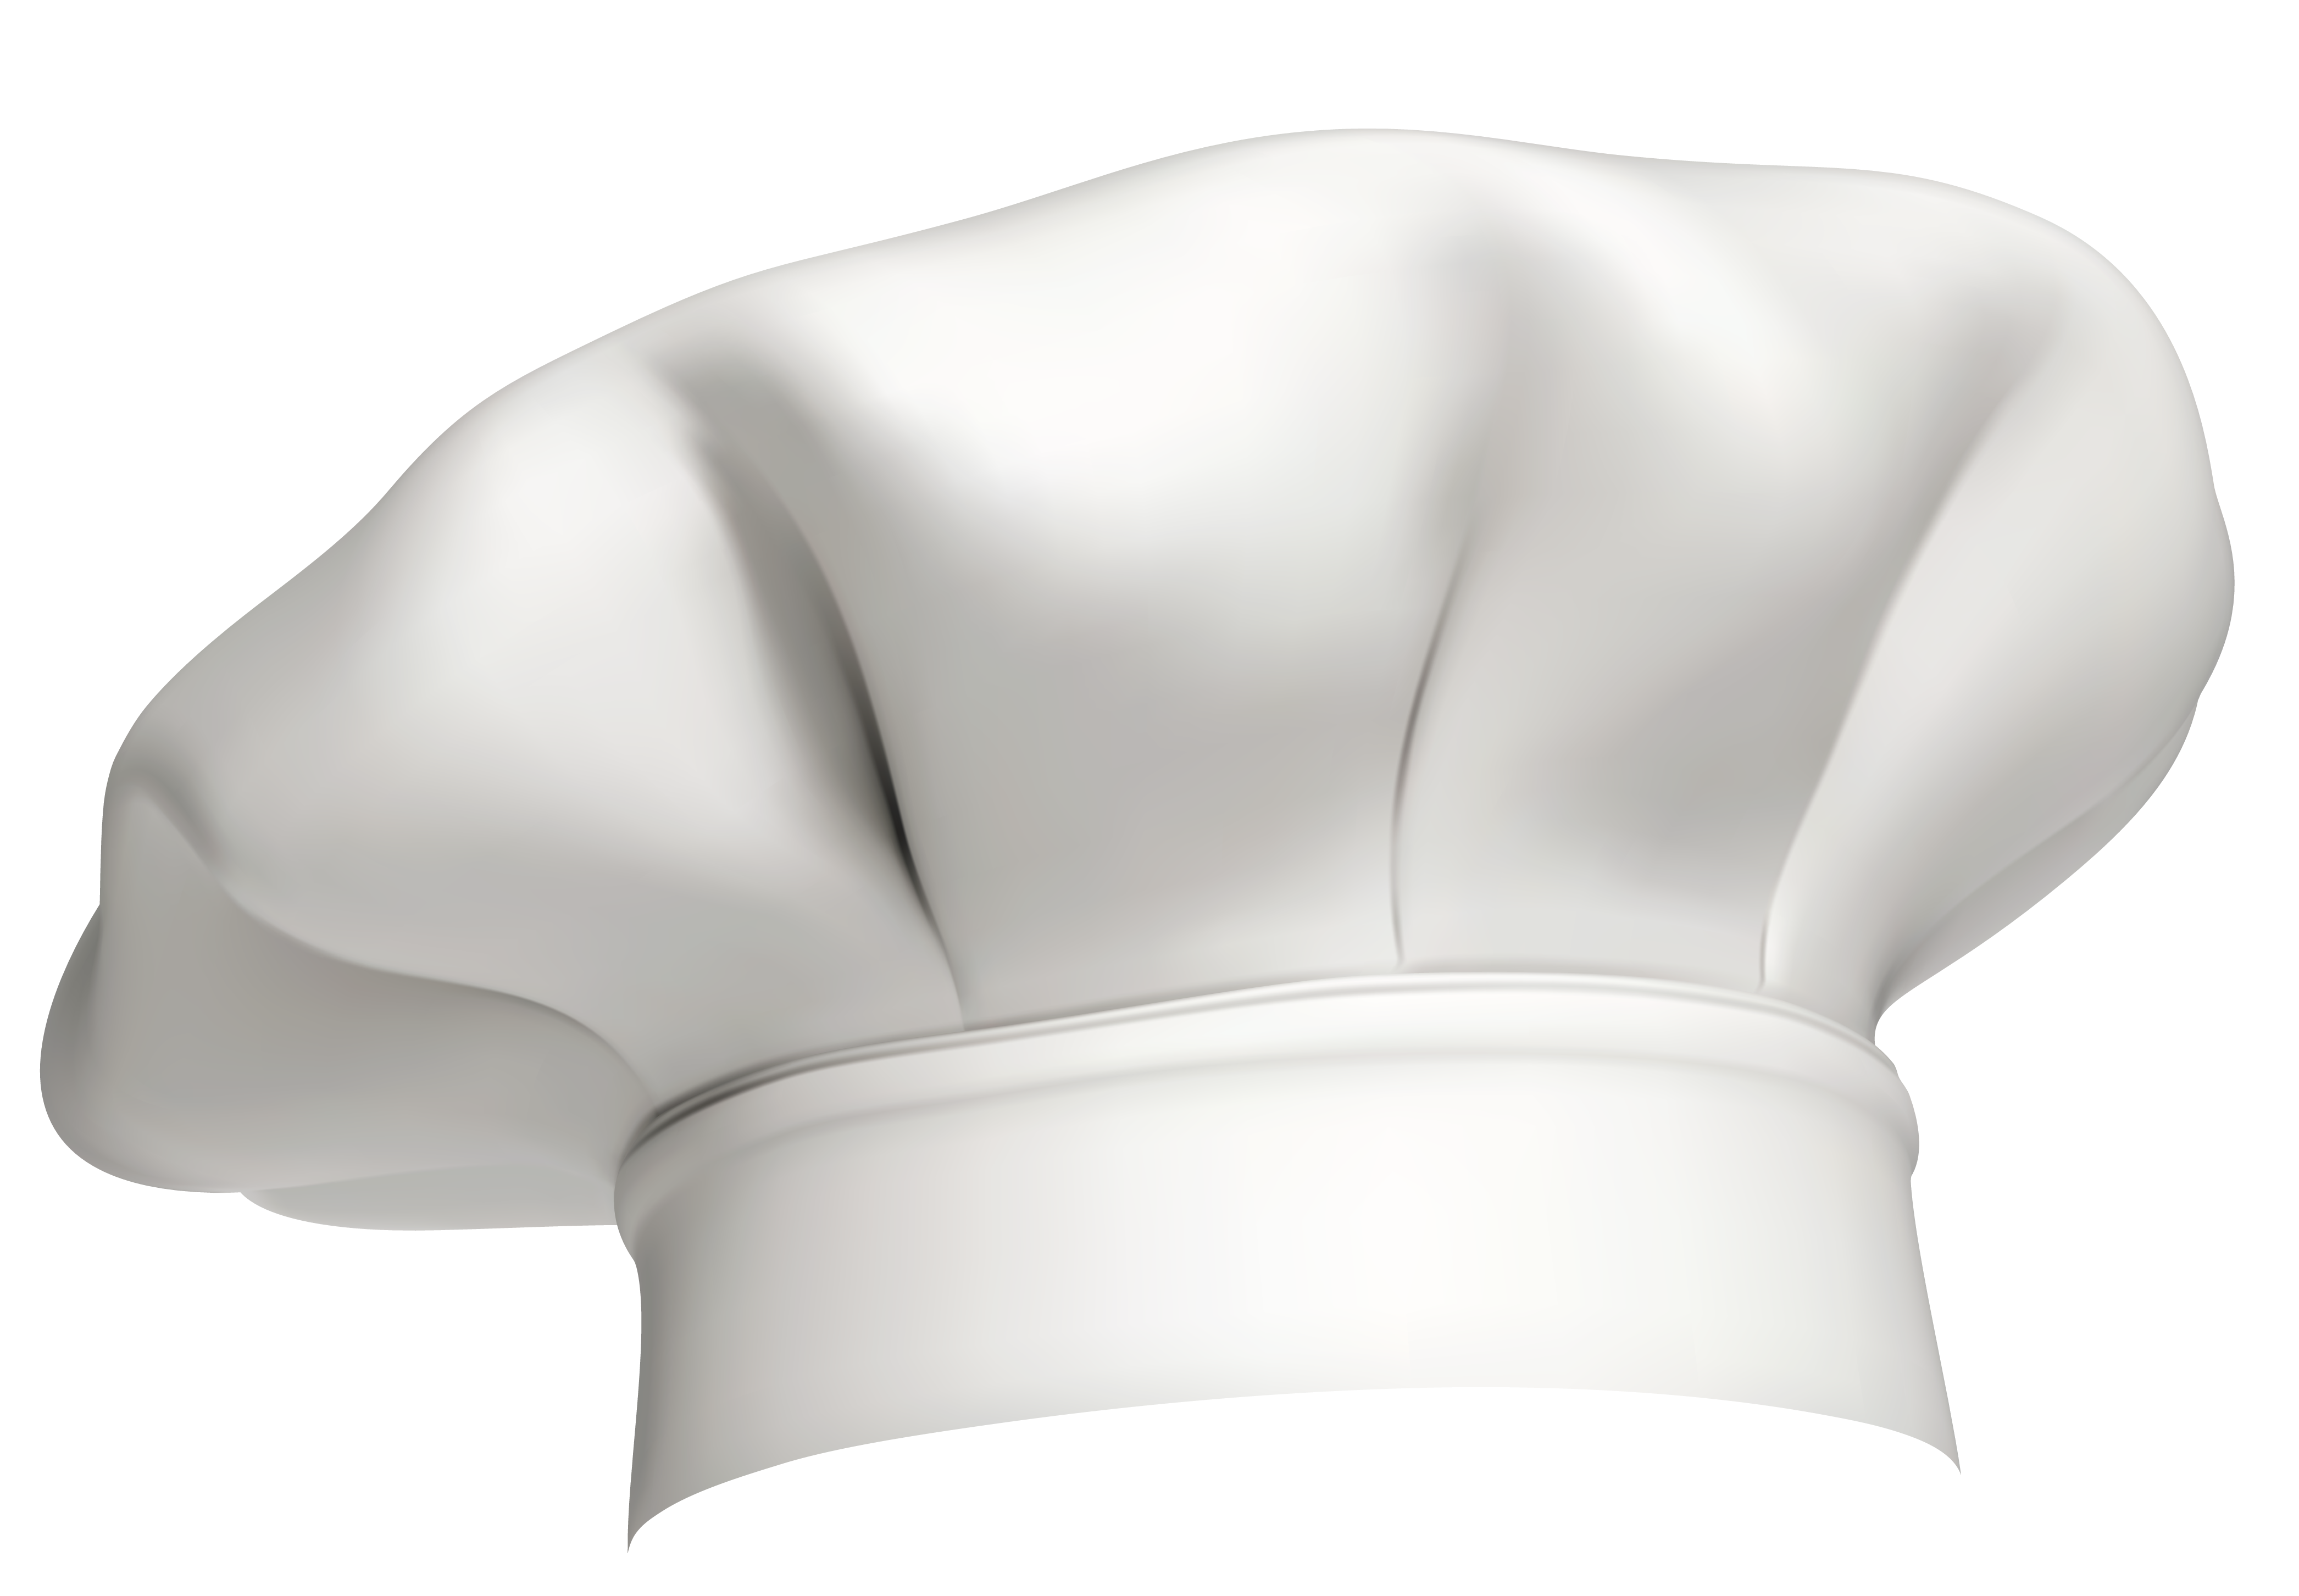 chef hat clipart black white - photo #38